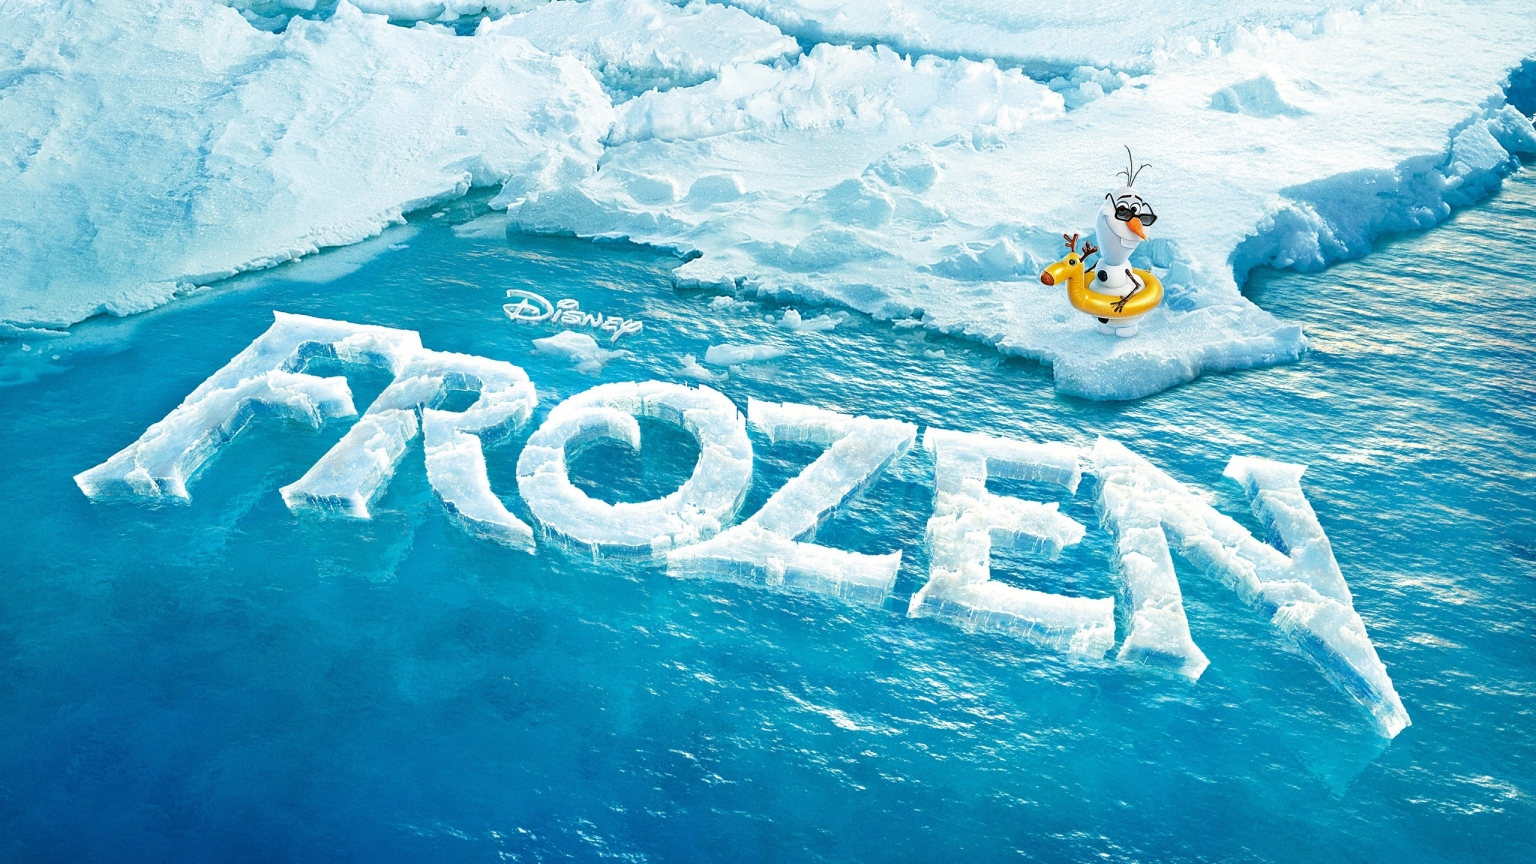 Frozen Movie for 1536 x 864 HDTV resolution